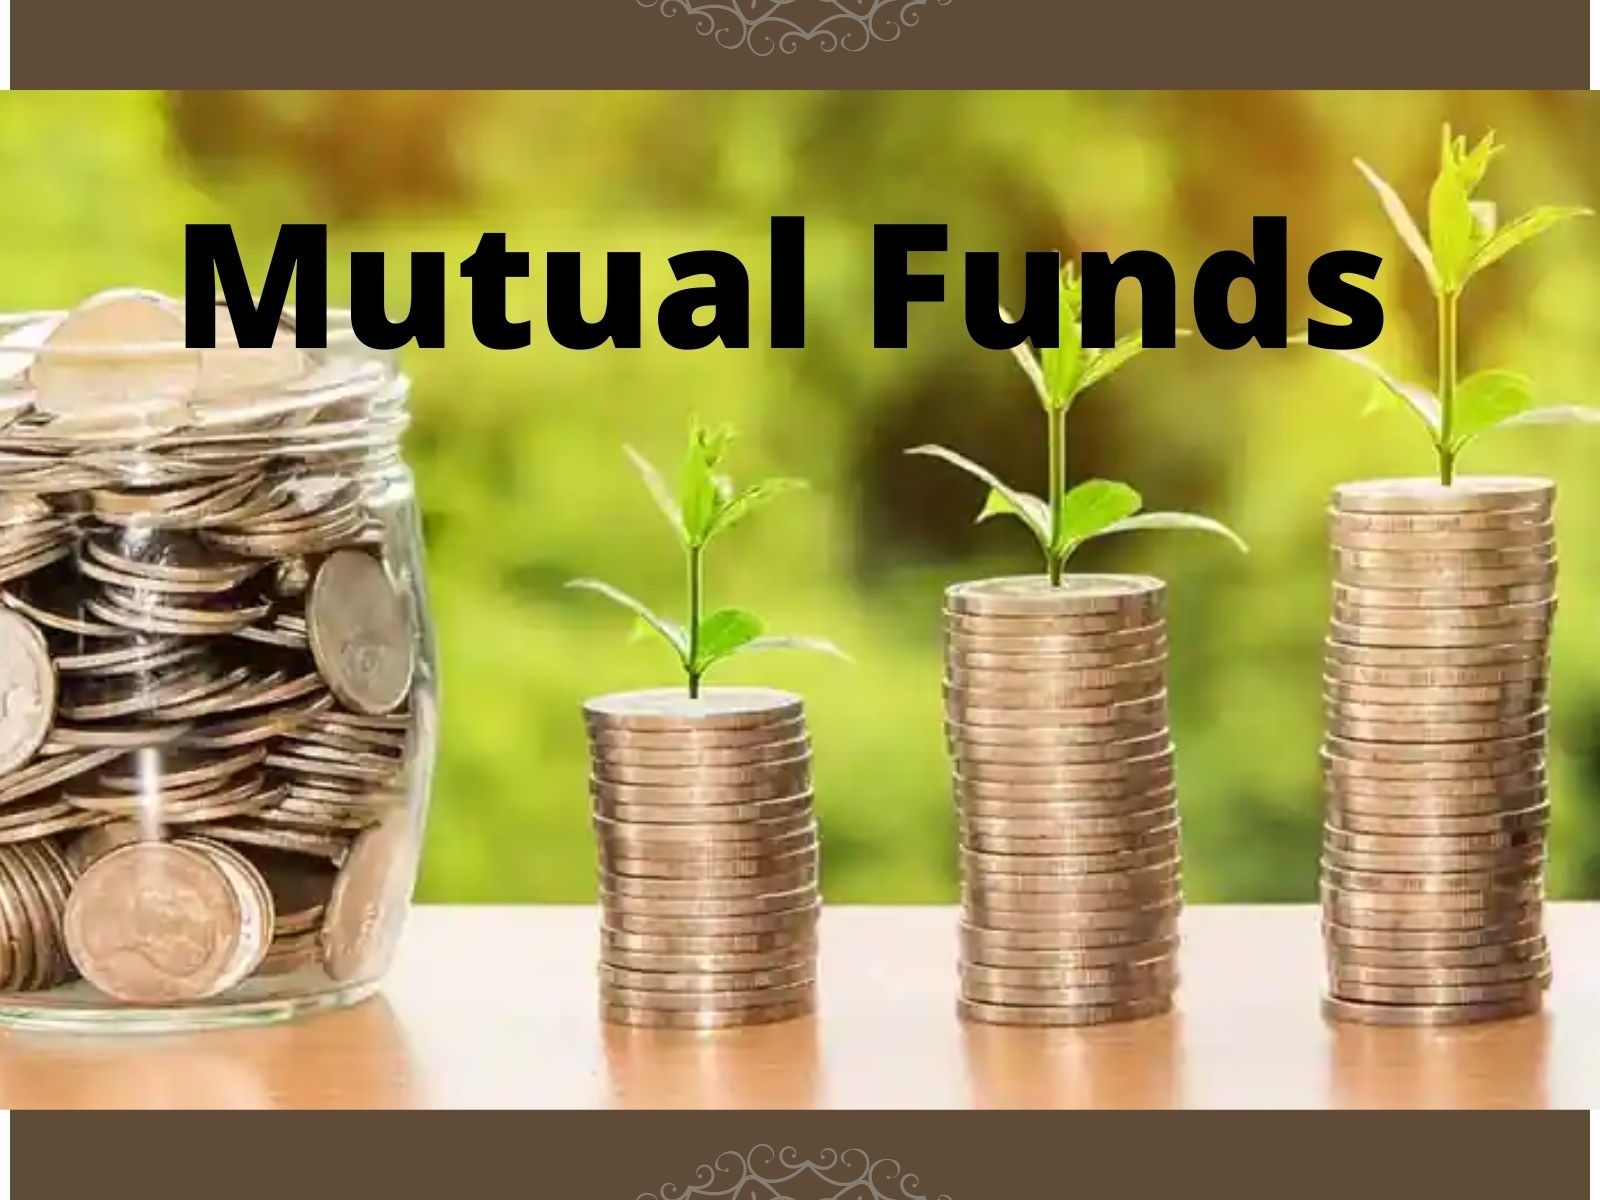 म्यूचुअल फंड में निवेश करना चाहते हैं! जानें विस्तार से Mutual Funds के बारे में - mutual fund investment know what is mutual funds share market – News18 हिंदी